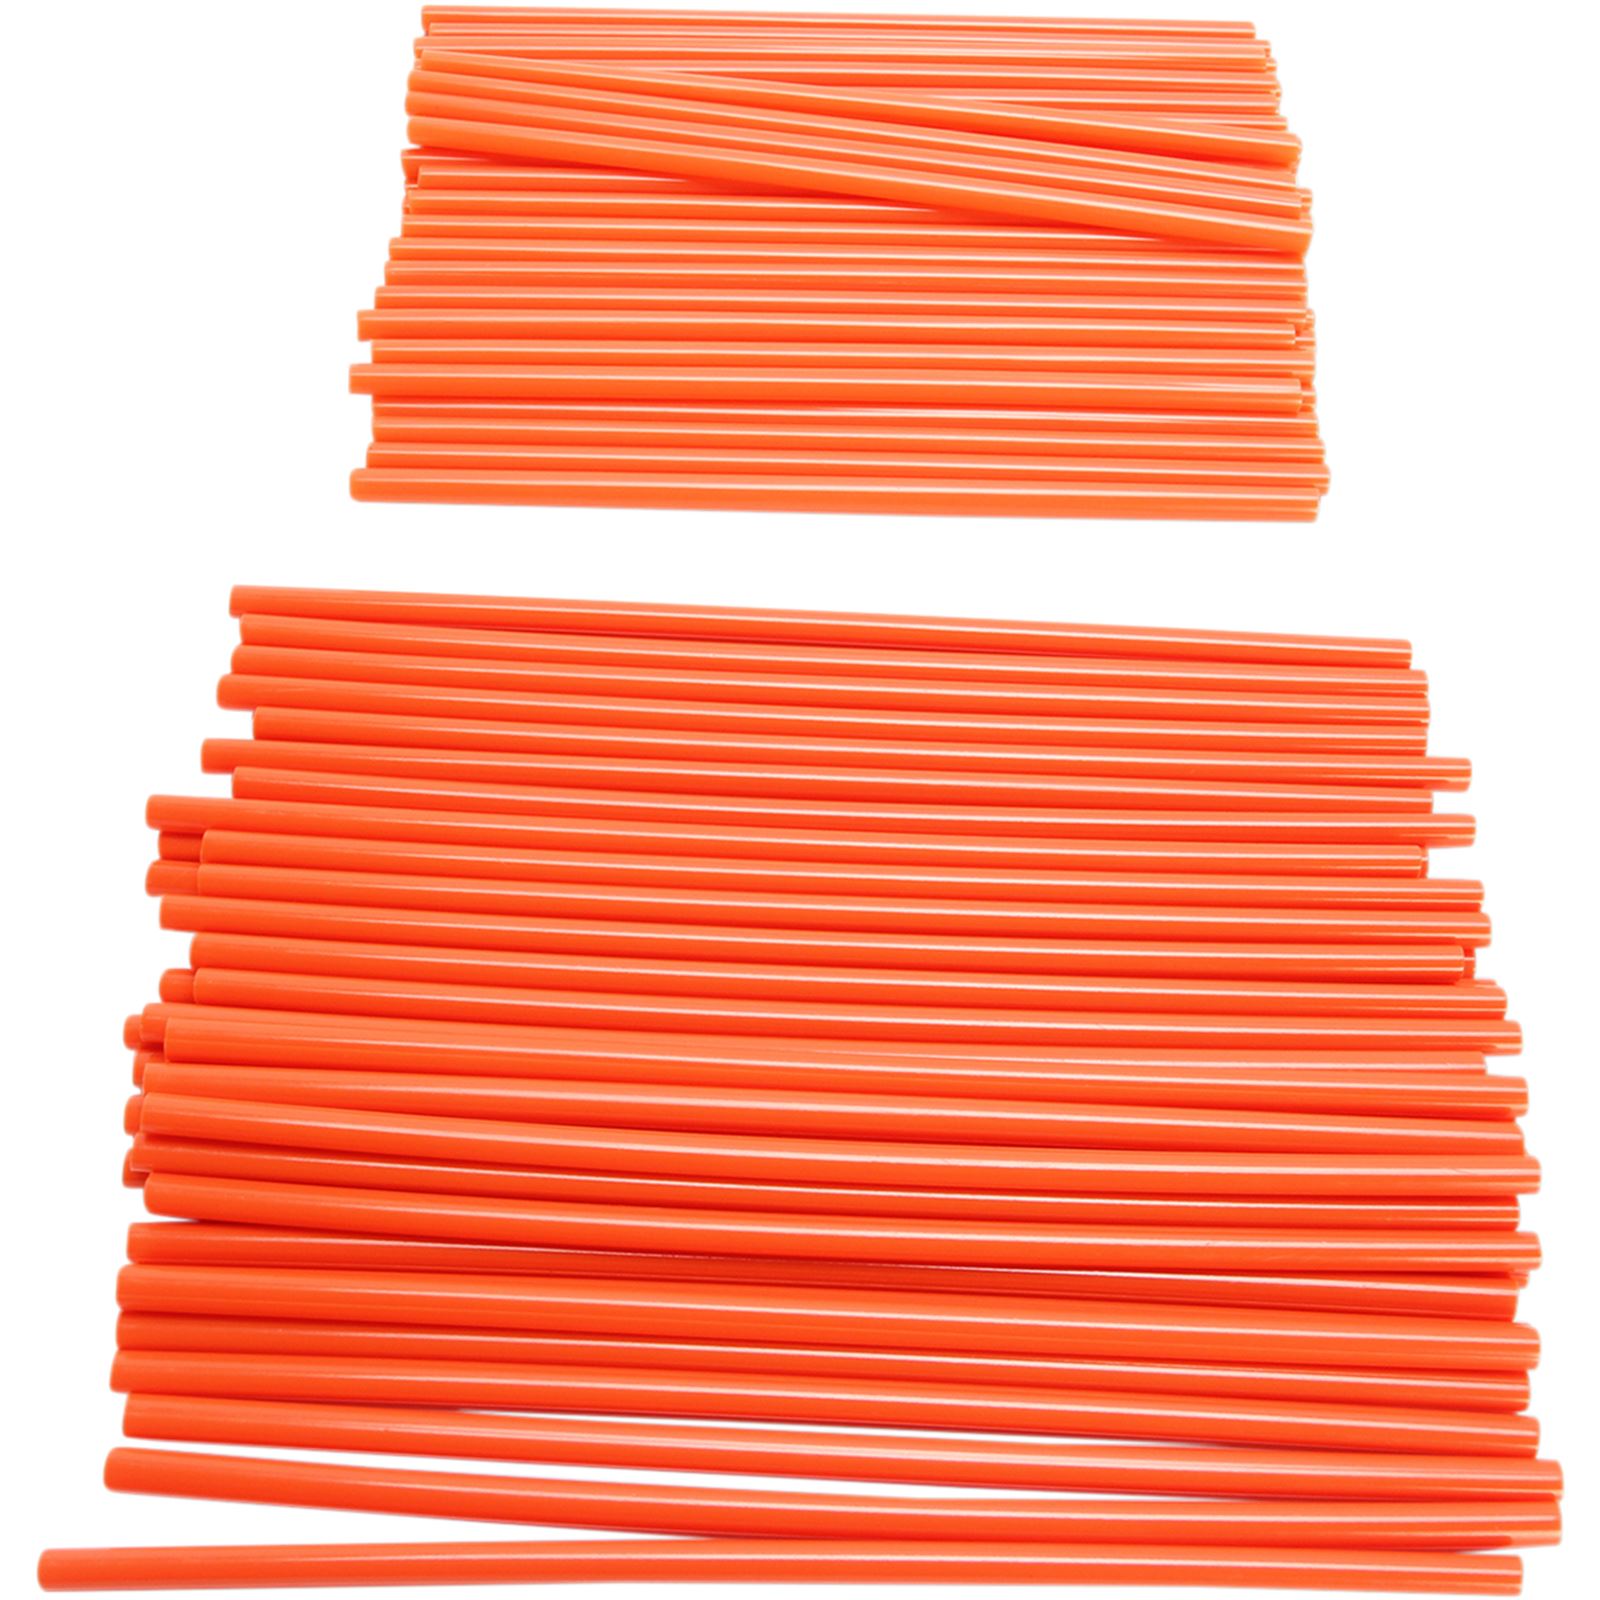 Emgo Spoke Covers Orange 80/Pack